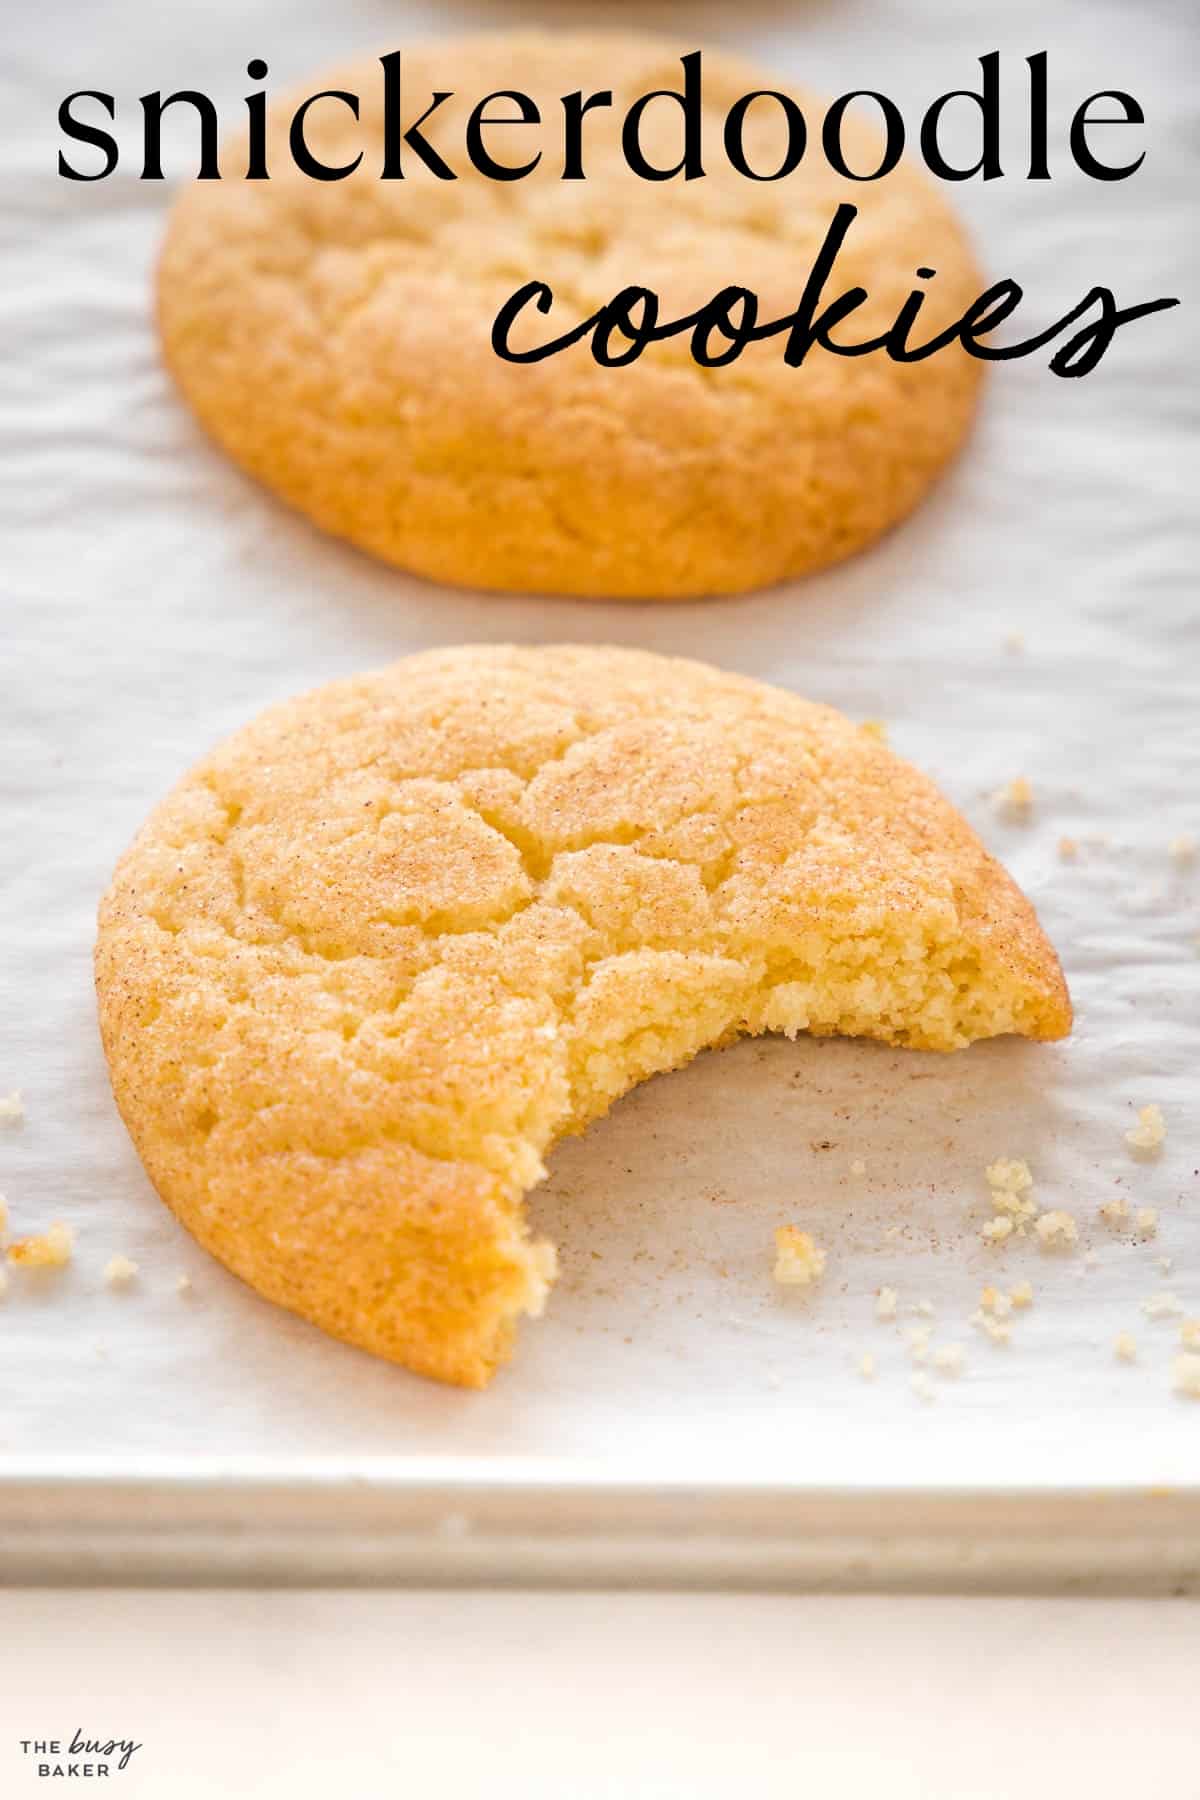 Snickerdoodle cookies recipe